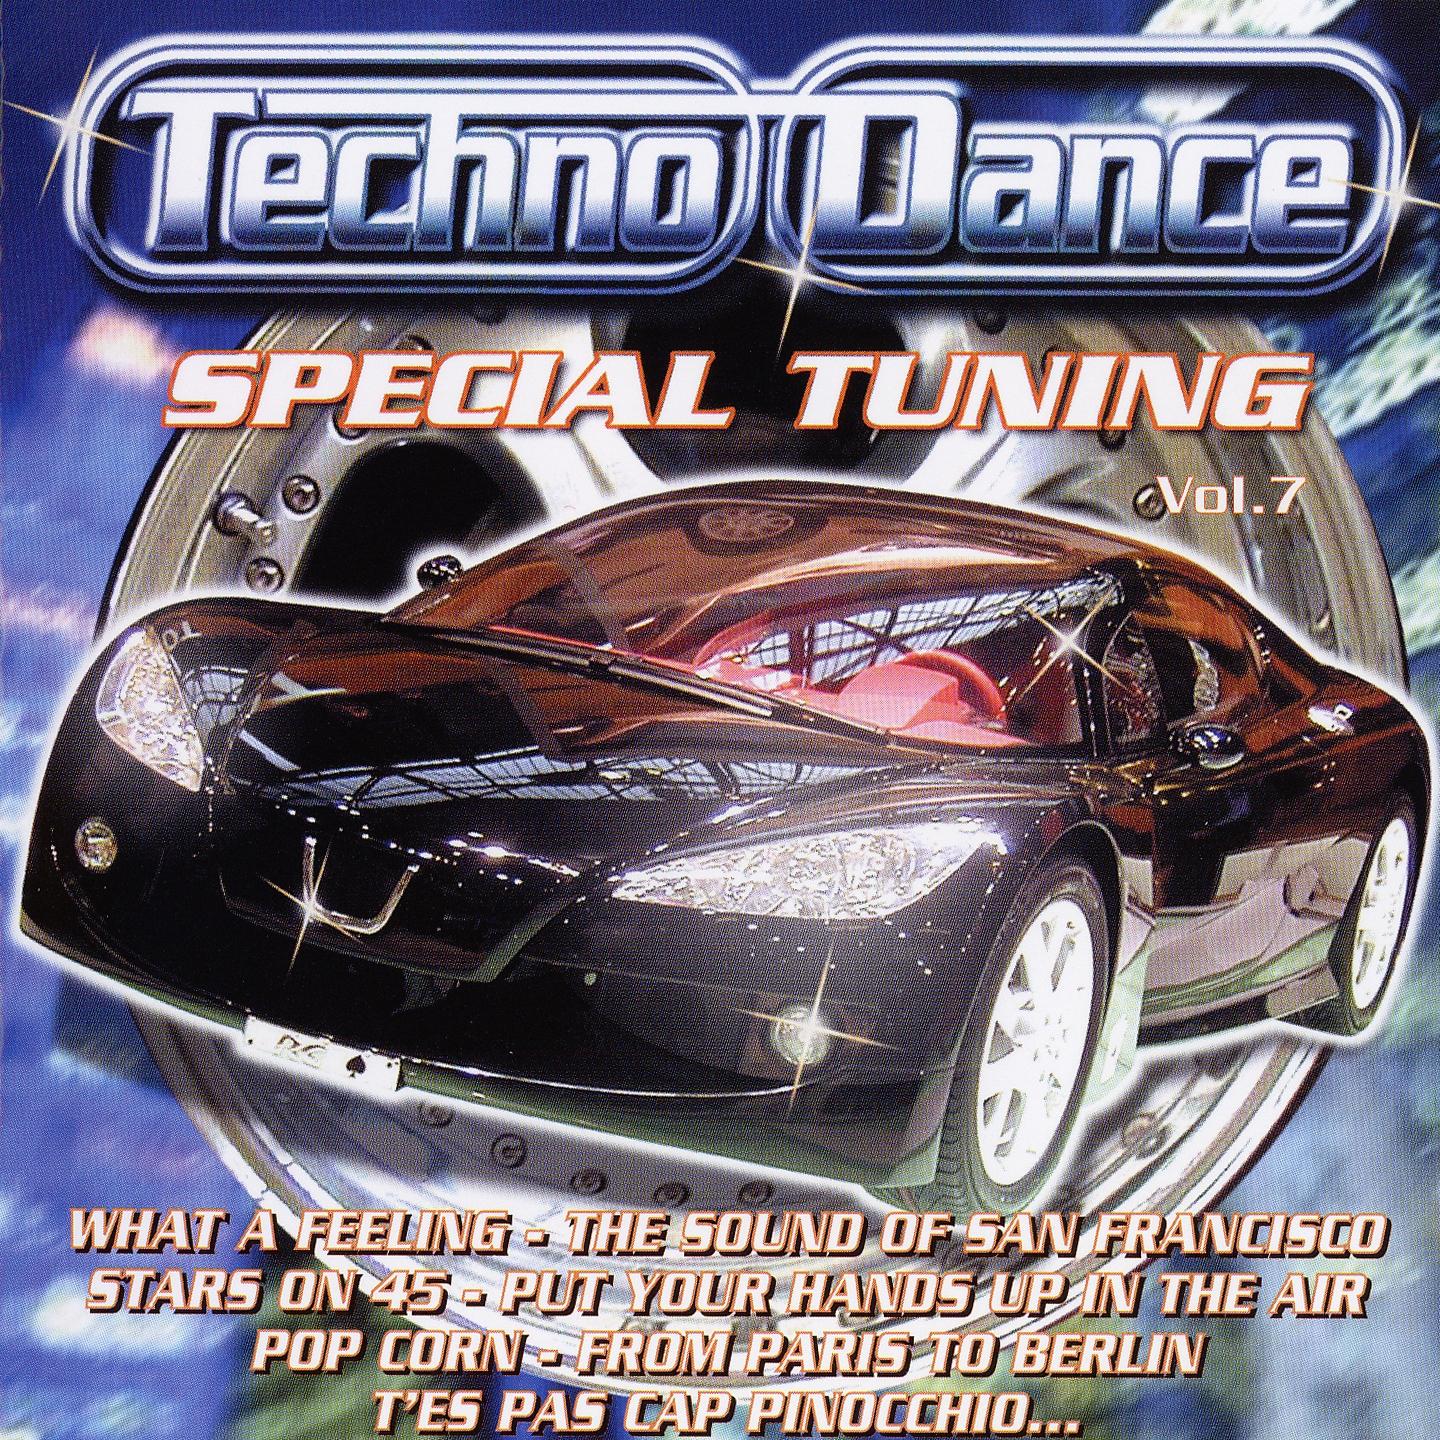 Techno Dance, Vol. 7